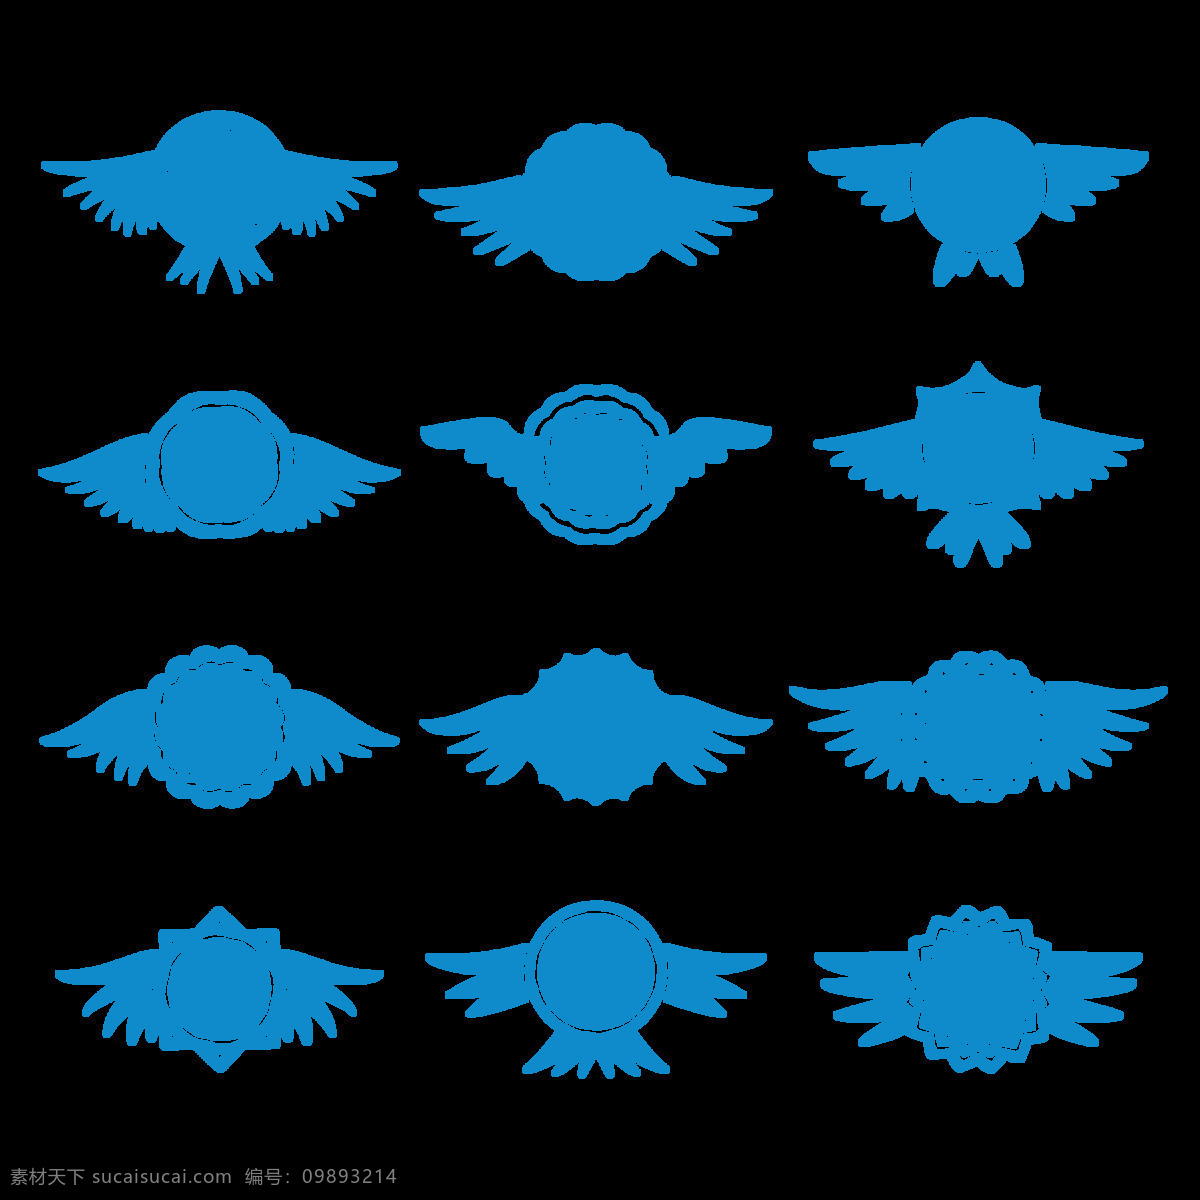 蓝色 调 抽象 翅膀 免 抠 透明 图 层 手绘翅膀 翅膀元素 小 天使 卡通翅膀 翅膀图片素材 纹身图案 翅膀素材 手绘翅膀图片